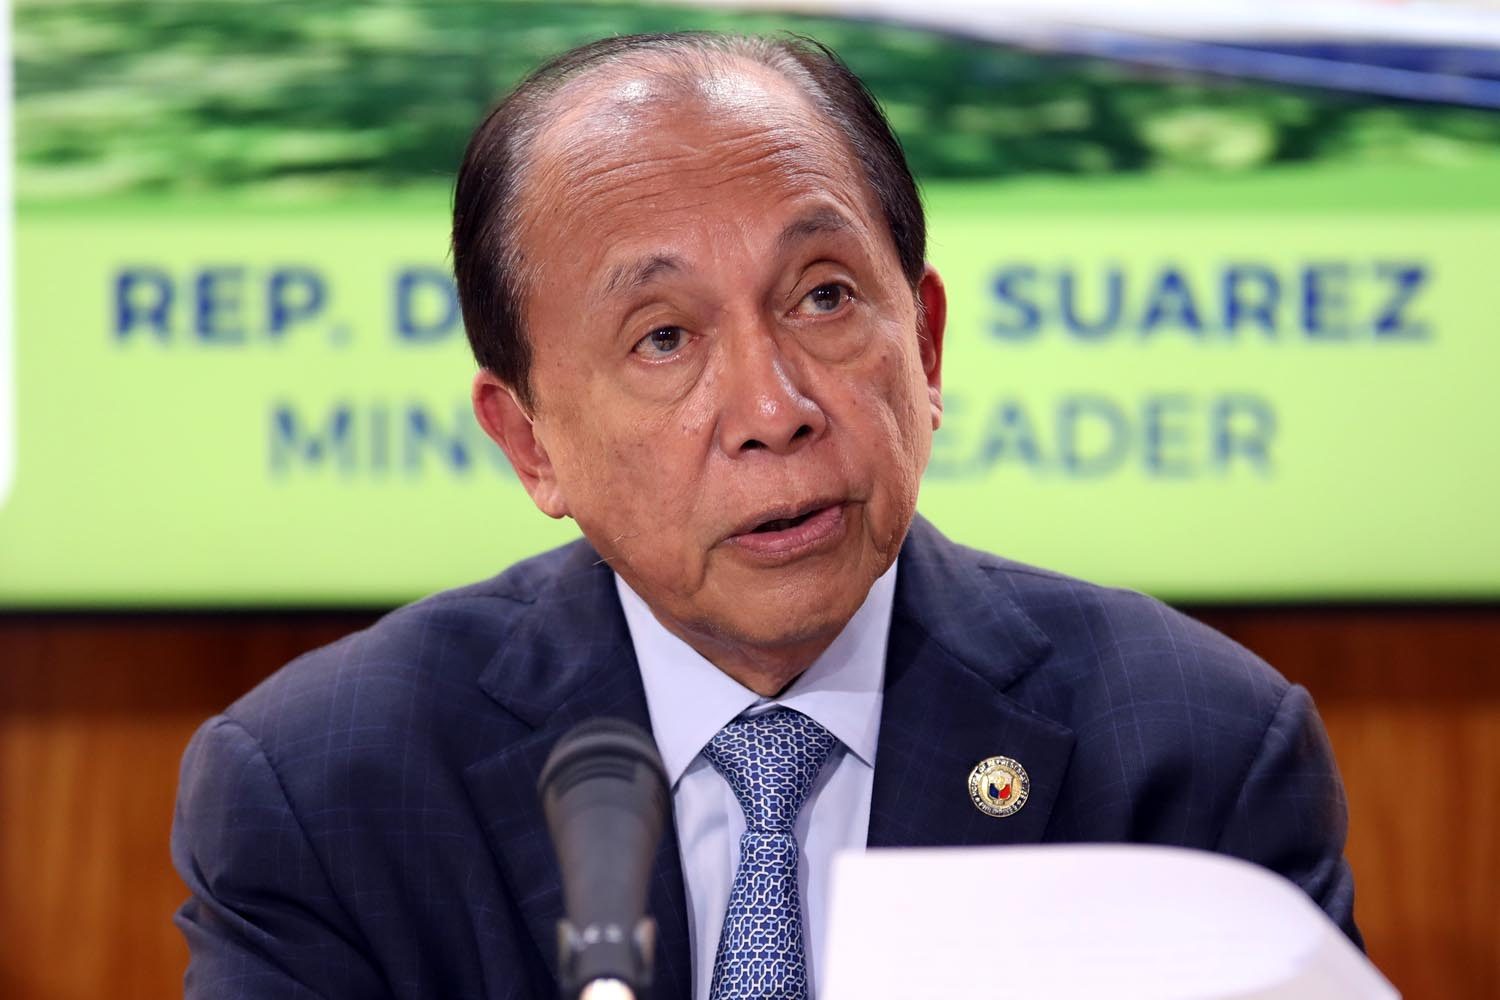 Quezon congressman Suarez wants Kanan, not Kaliwa Dam